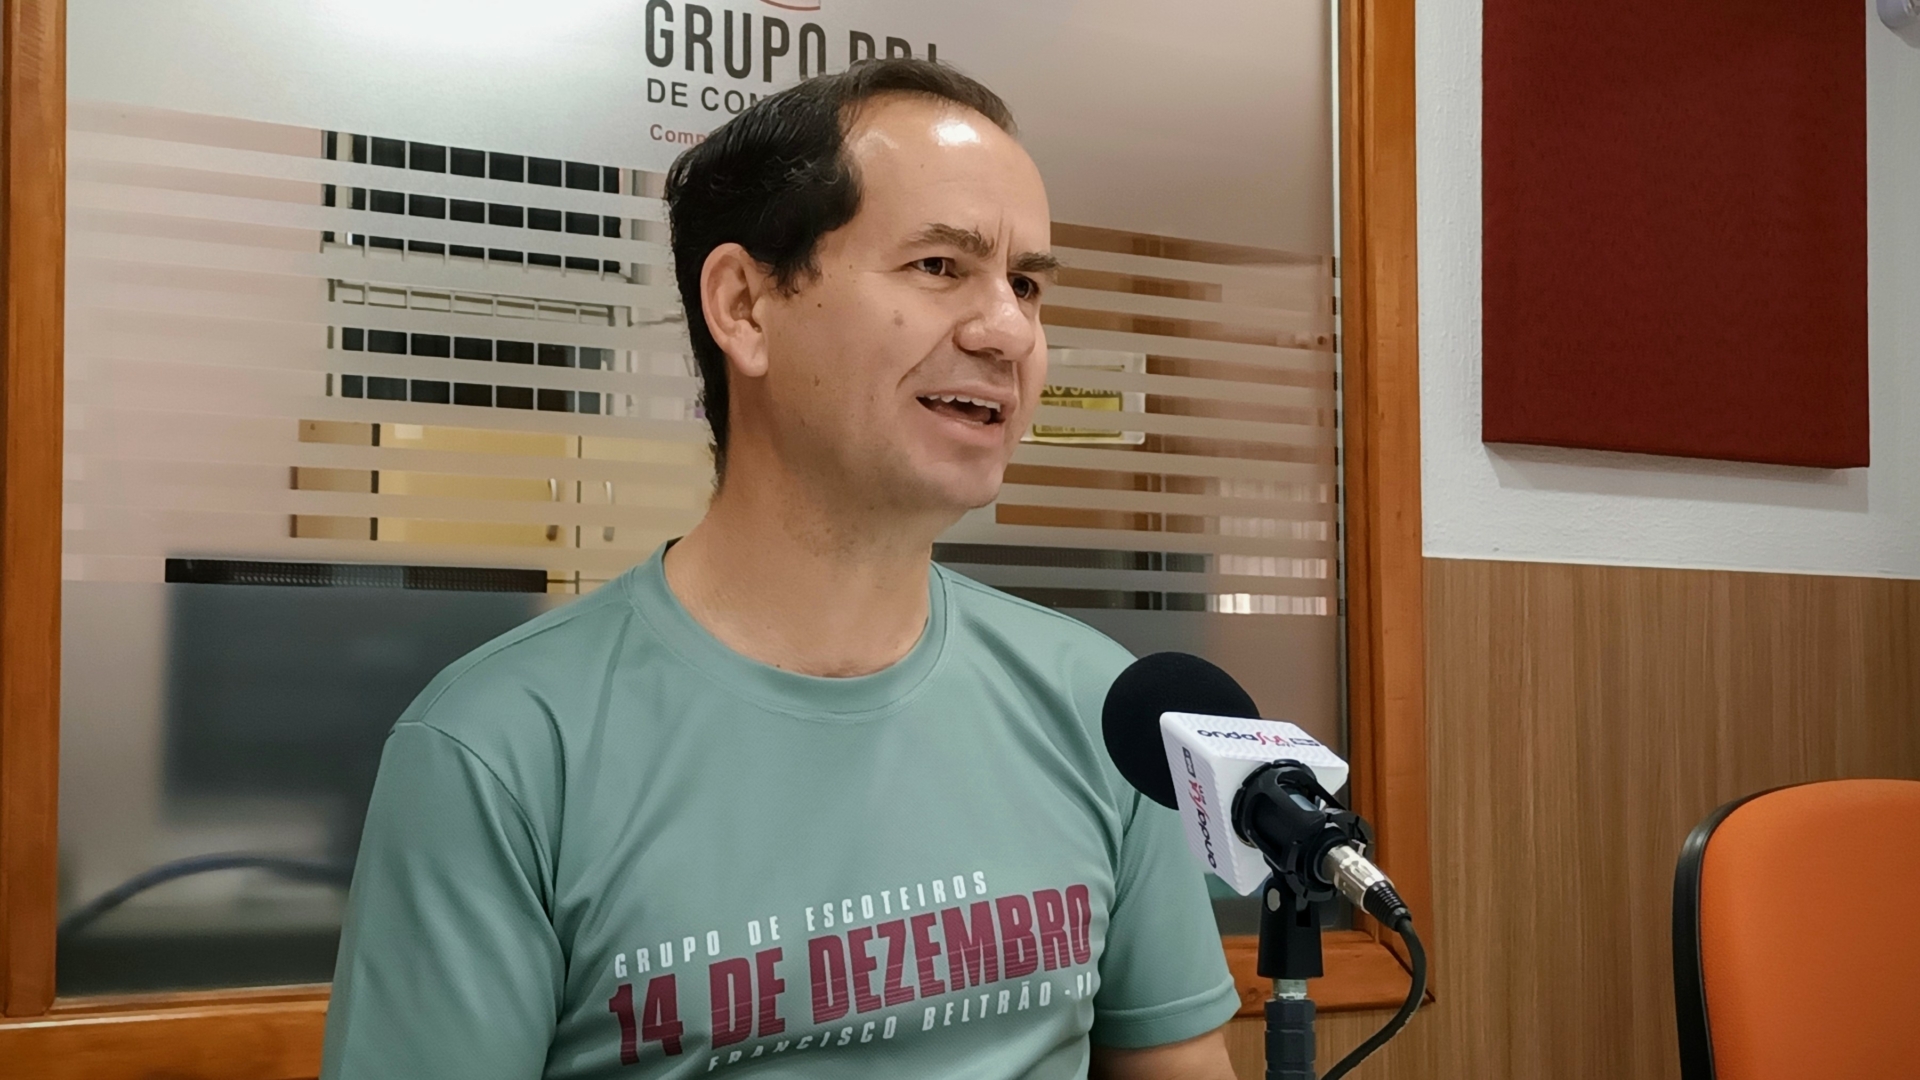 Podcast RBJ: A atividade dos escoteiros em Francisco Beltrão